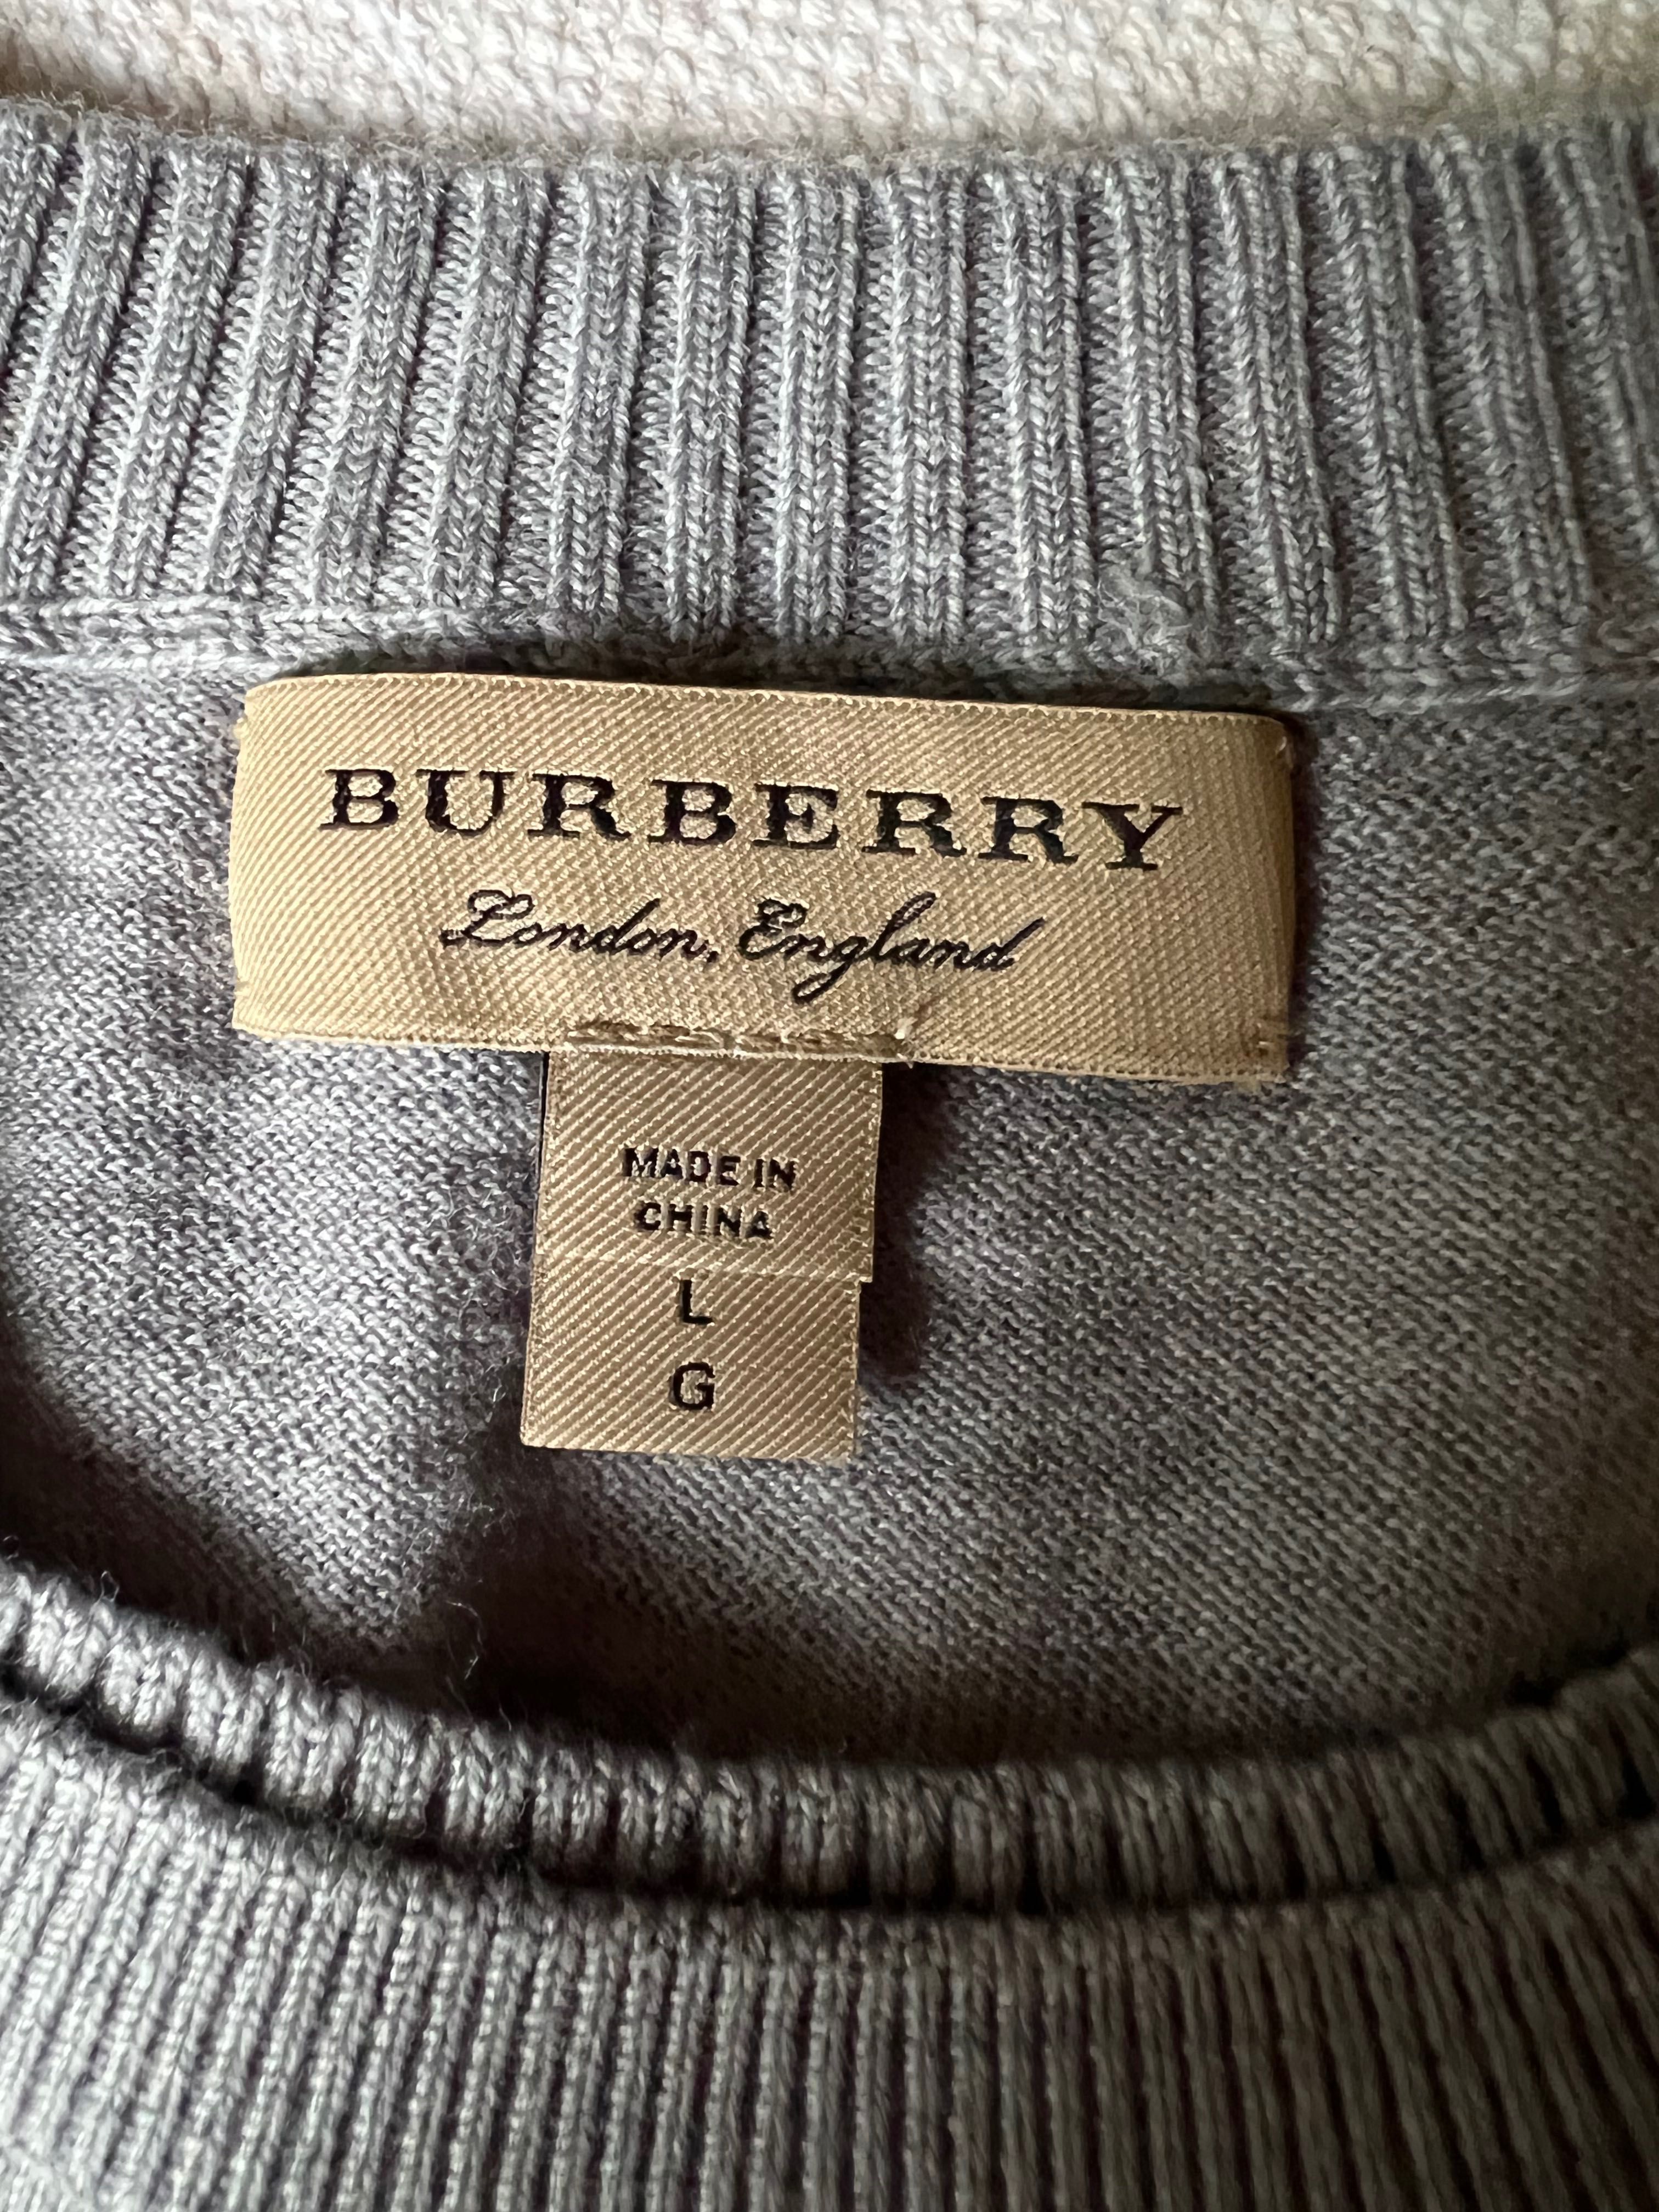 Nowy szary oryginalny sweterek Burberry London England L